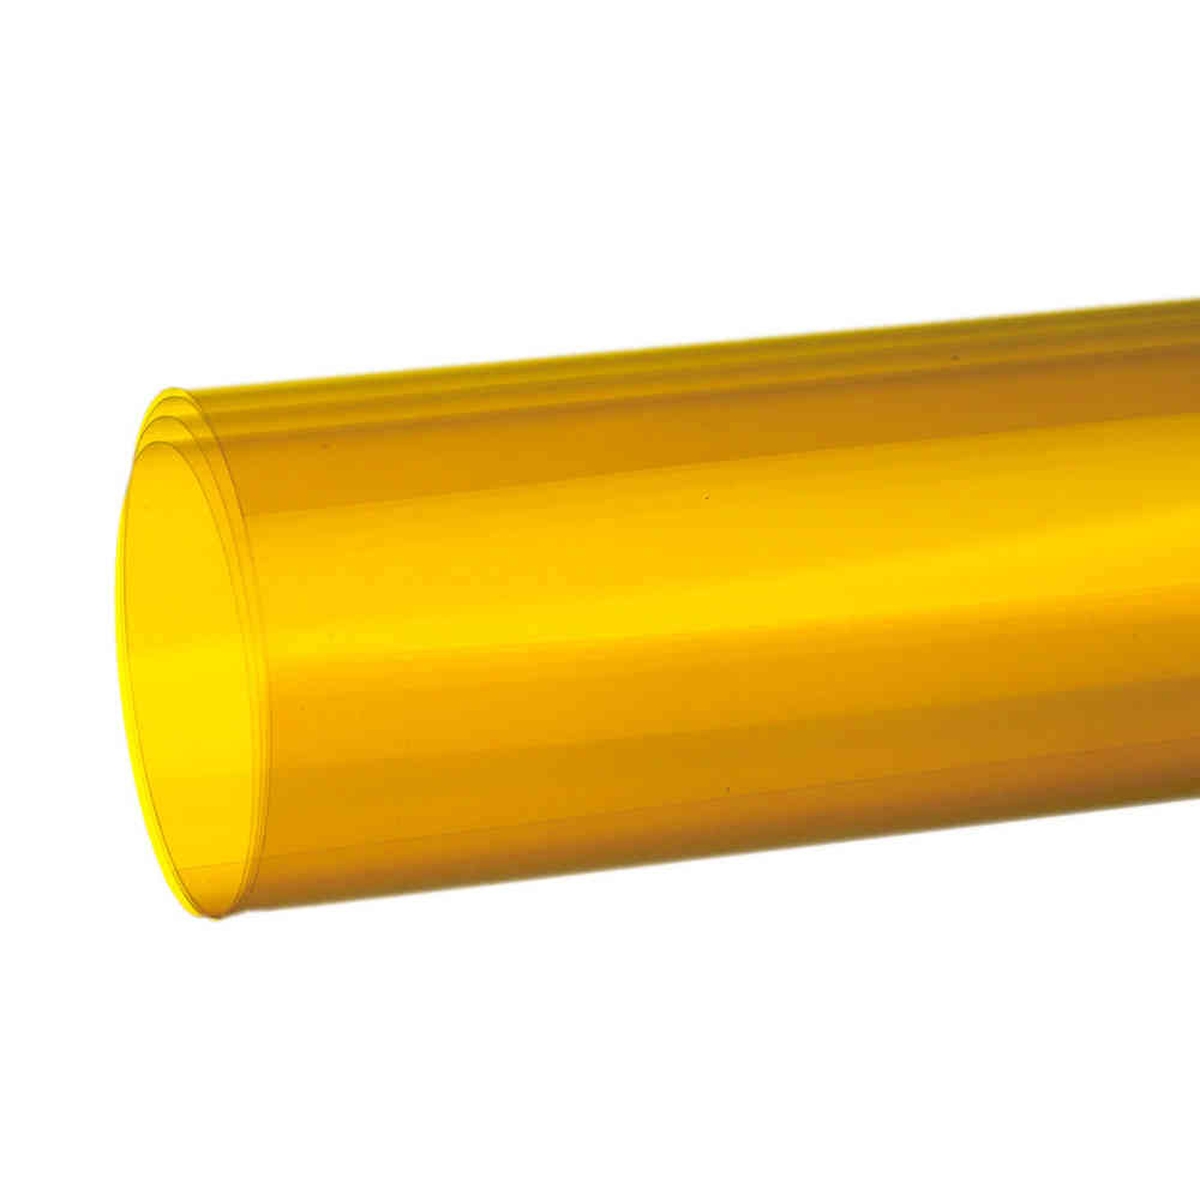 Hedler MaxiSoft Filterfolie gelb 120 x 100 cm - Farbeffektfilter